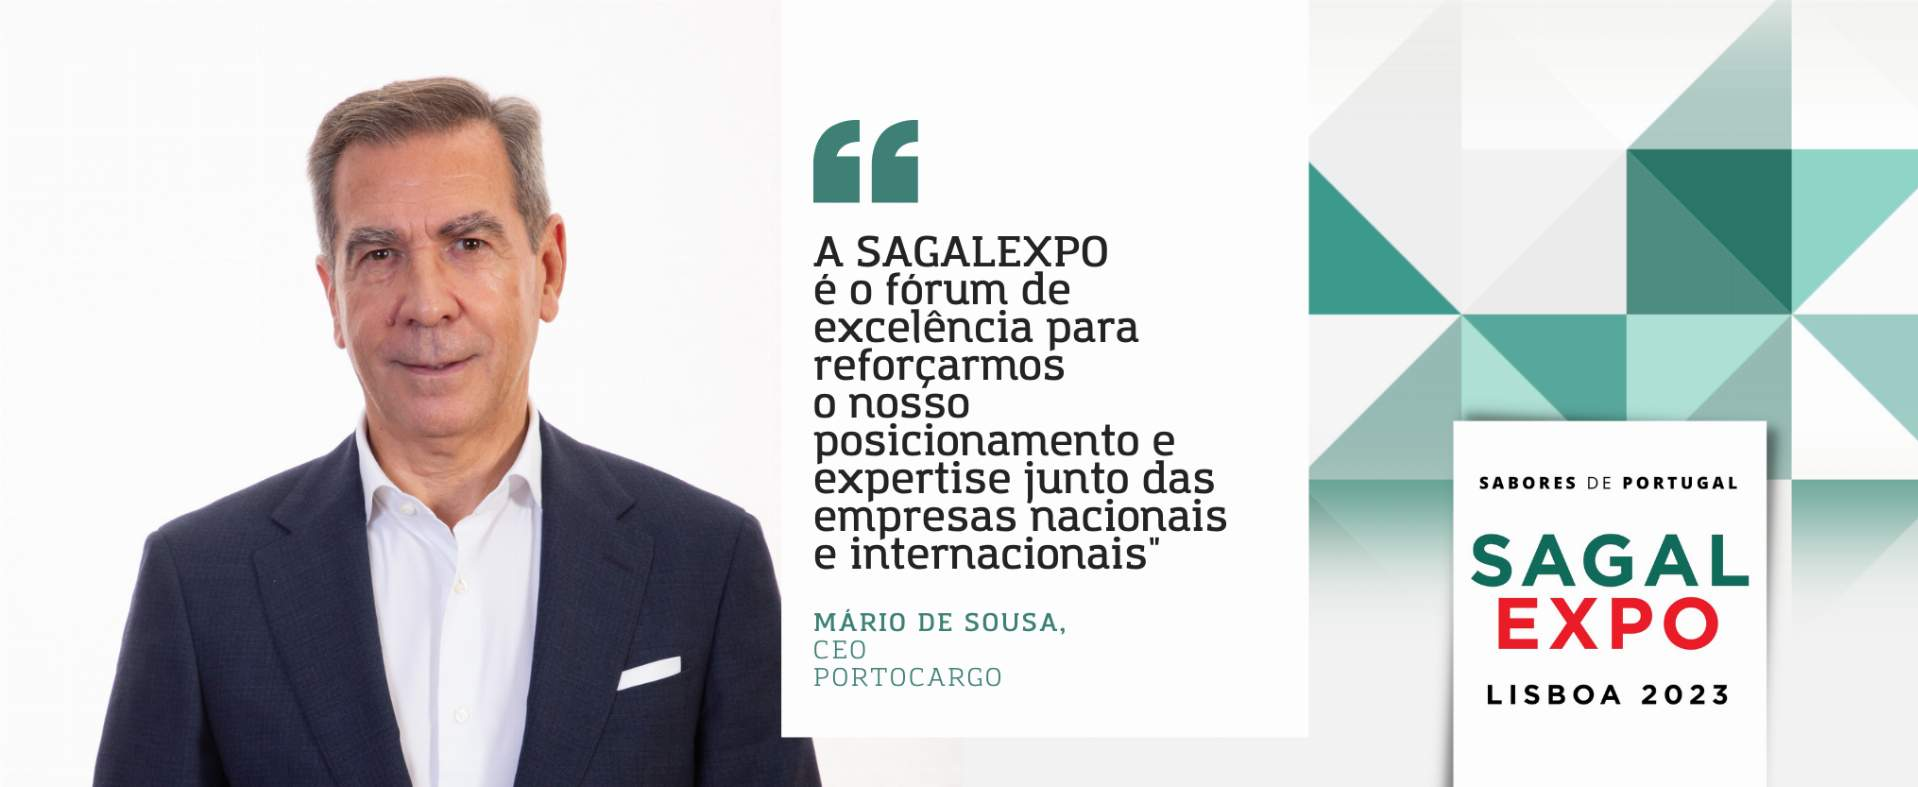 Portocargo: “A SAGALEXPO é o fórum de excelência para reforçarmos o nosso posicionamento e expertise junto das empresas nacionais e internacionais”